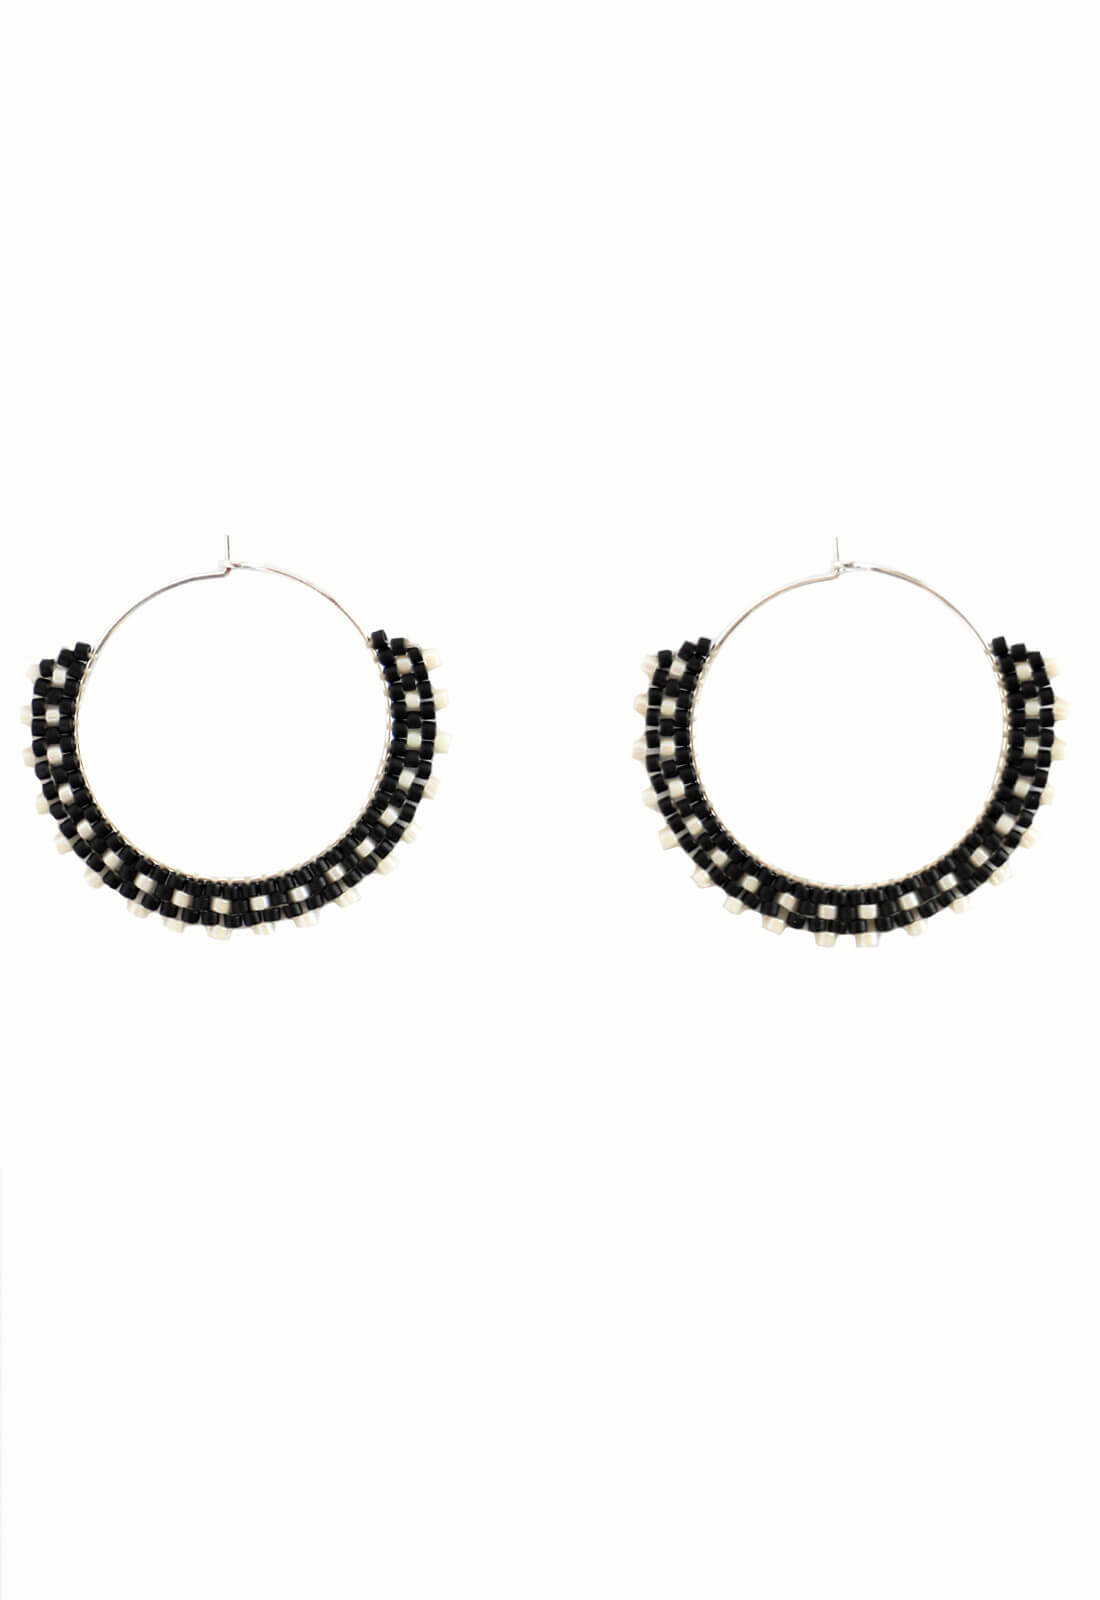 Beaded Hoop Earrings - Black and White